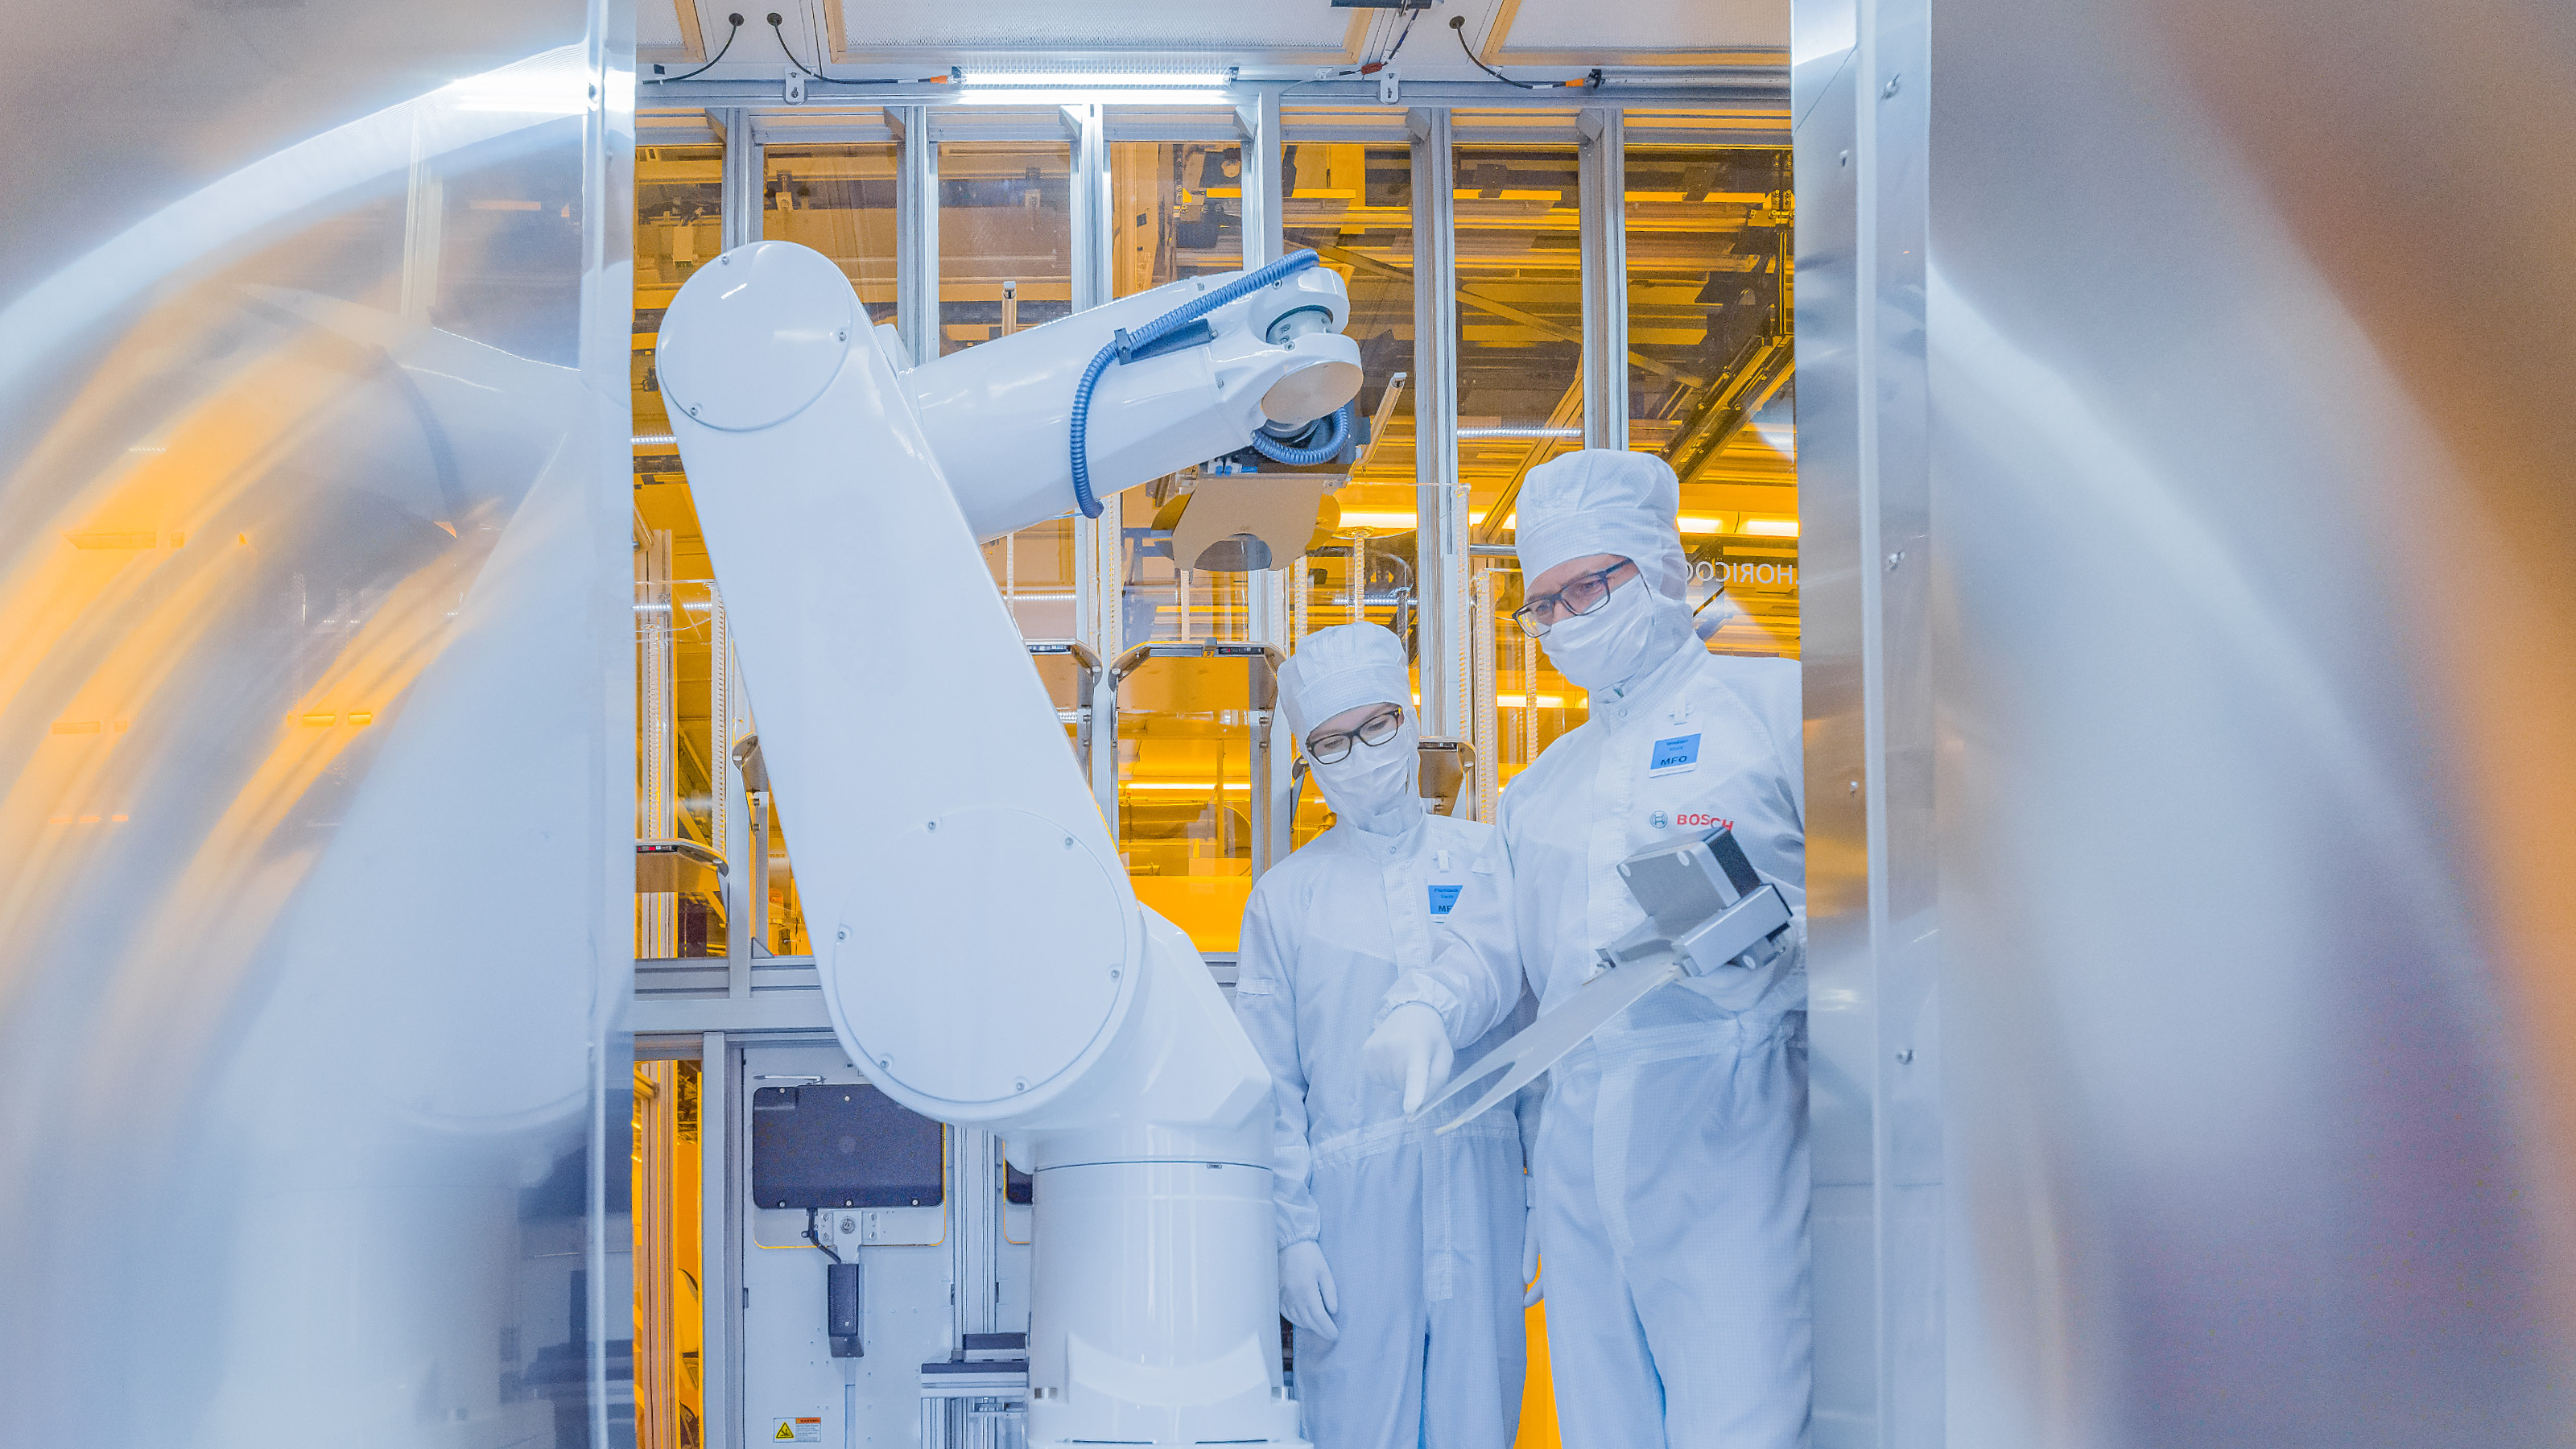 "Tecnologia per la vita" con i semiconduttori: Bosch investe miliardi nel business dei chip